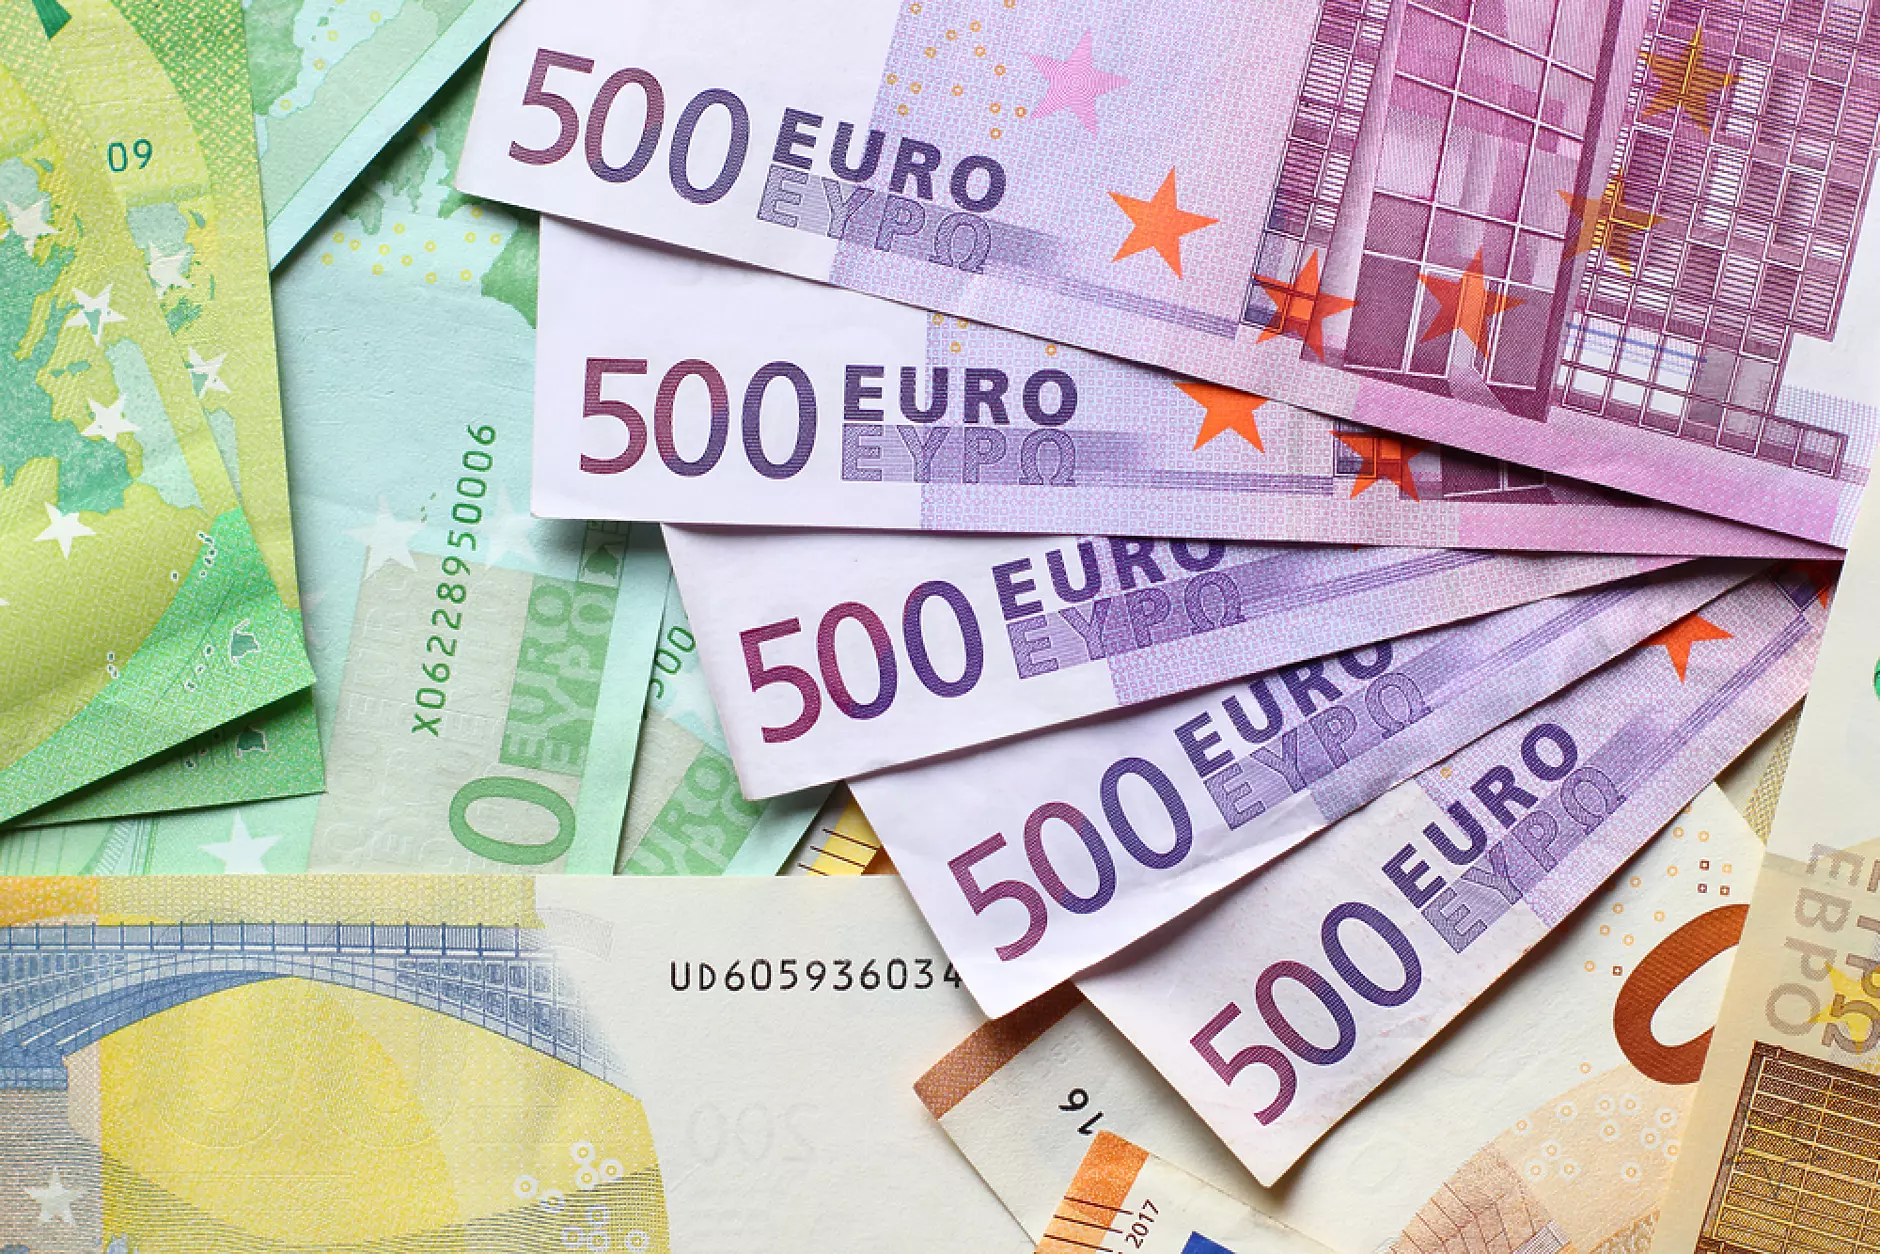 Общата стойност на инвестиционните сделки в България през първото полугодие e близо 67 млн. евро